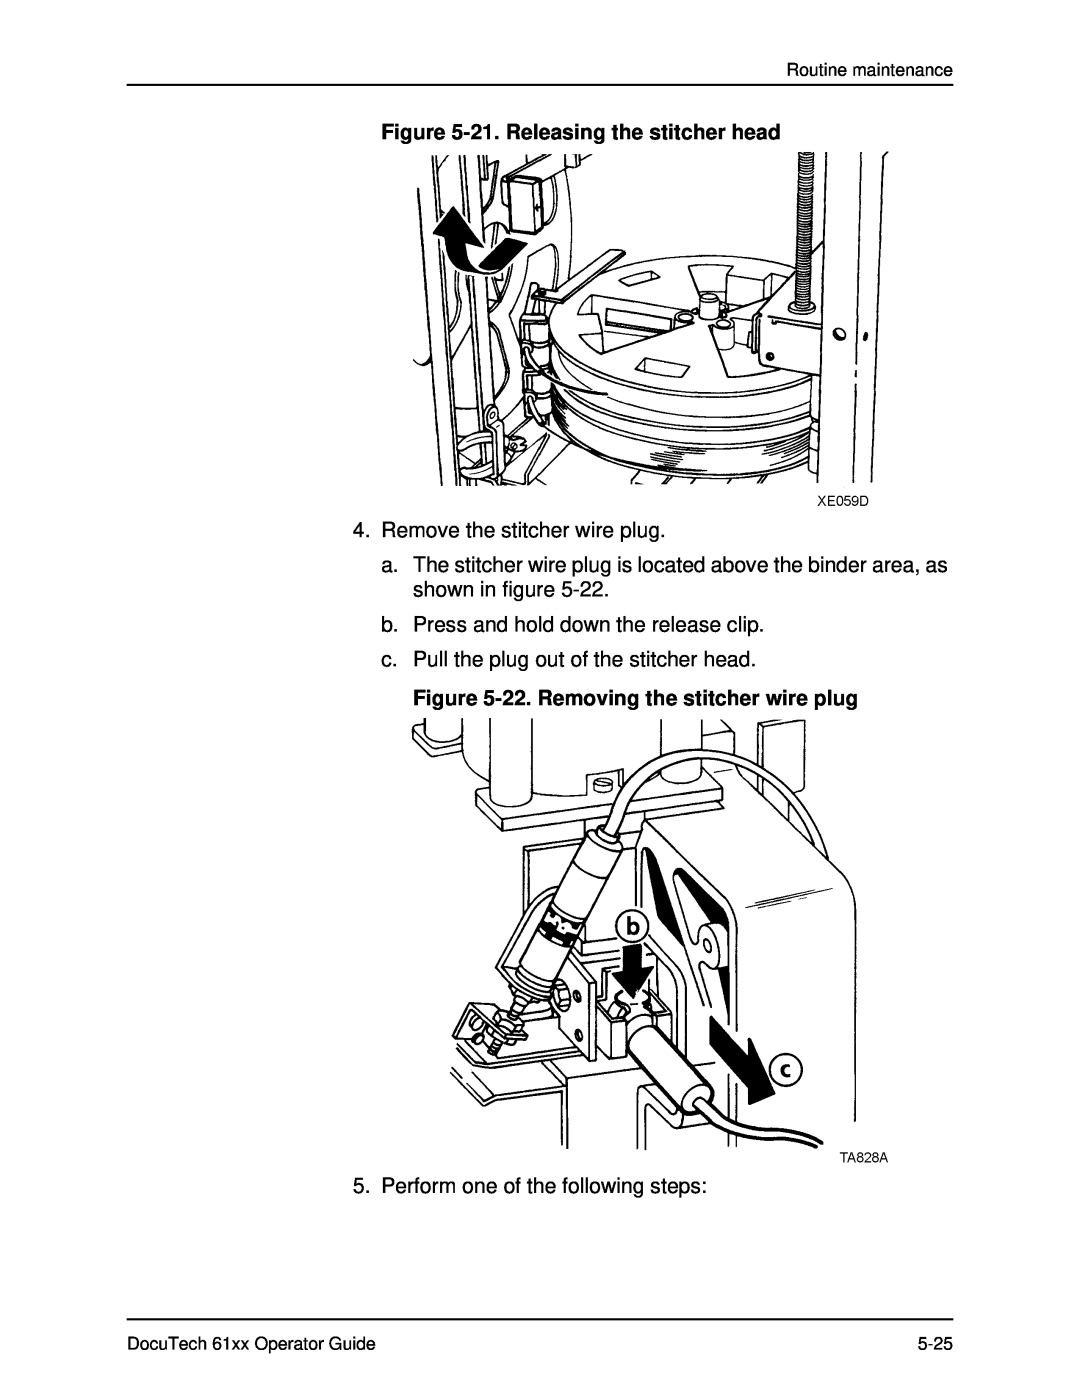 Xerox 61xx manual 21. Releasing the stitcher head, 22. Removing the stitcher wire plug, Remove the stitcher wire plug 